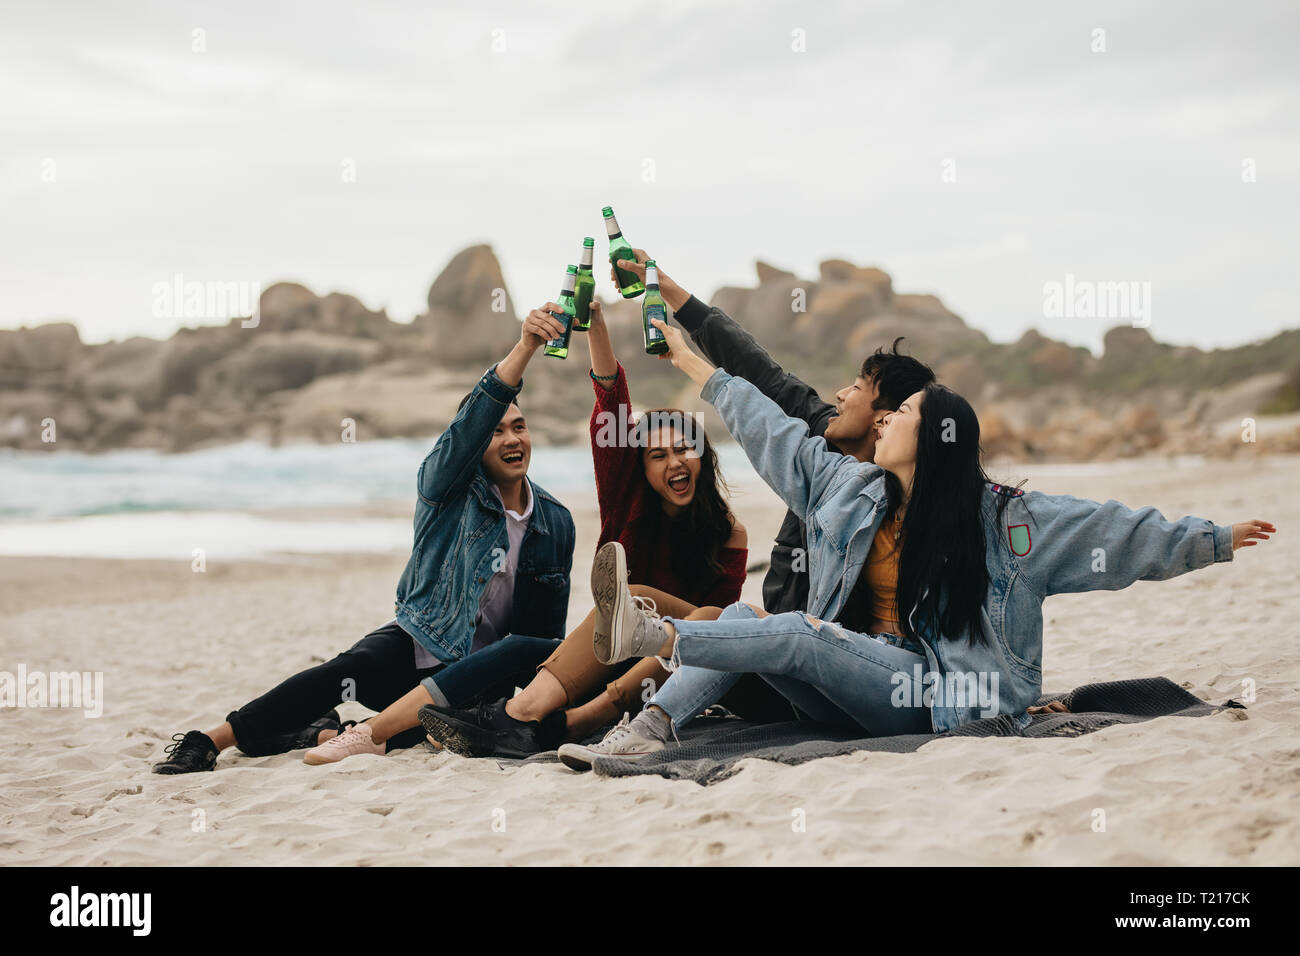 Quatre amis asiatique excité toasting beer sur la plage. Les jeunes gens sur la plage ayant une partie avec des boissons. Banque D'Images